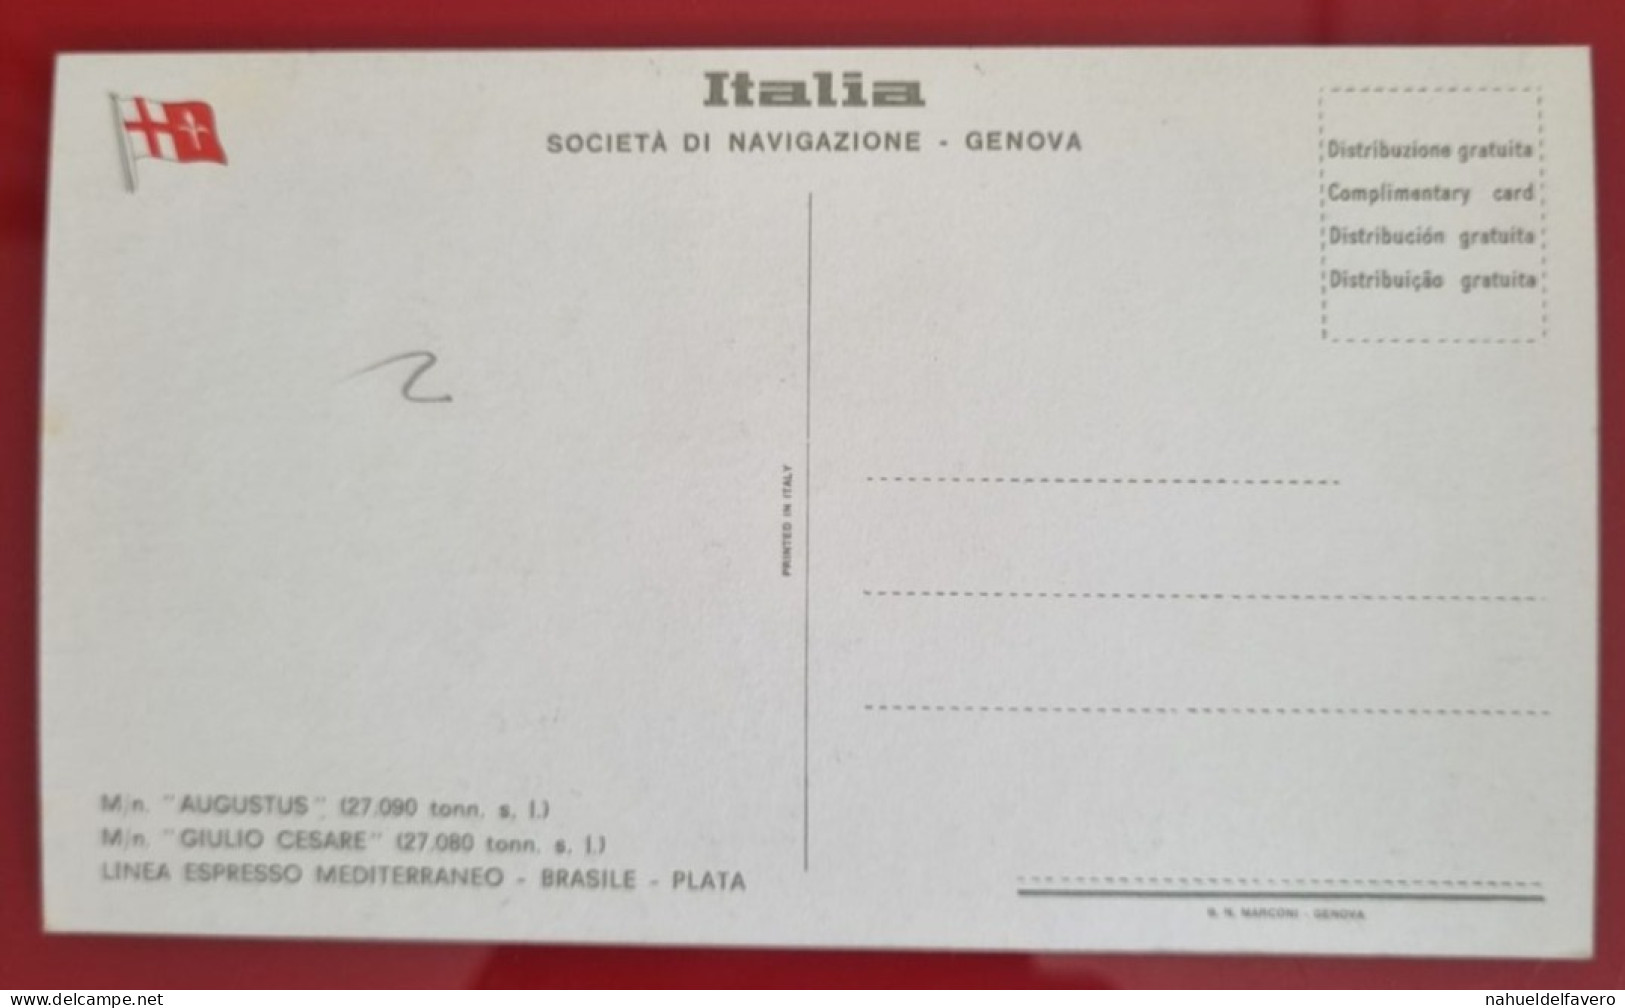 Carta Postale Non Circulée - ITALIA - SOCIETÁ DI NAVEGAZIONE, GENOVA - M/n GIULIO CESARE (27.080 Tonn. S. L.) - Embarcaciones